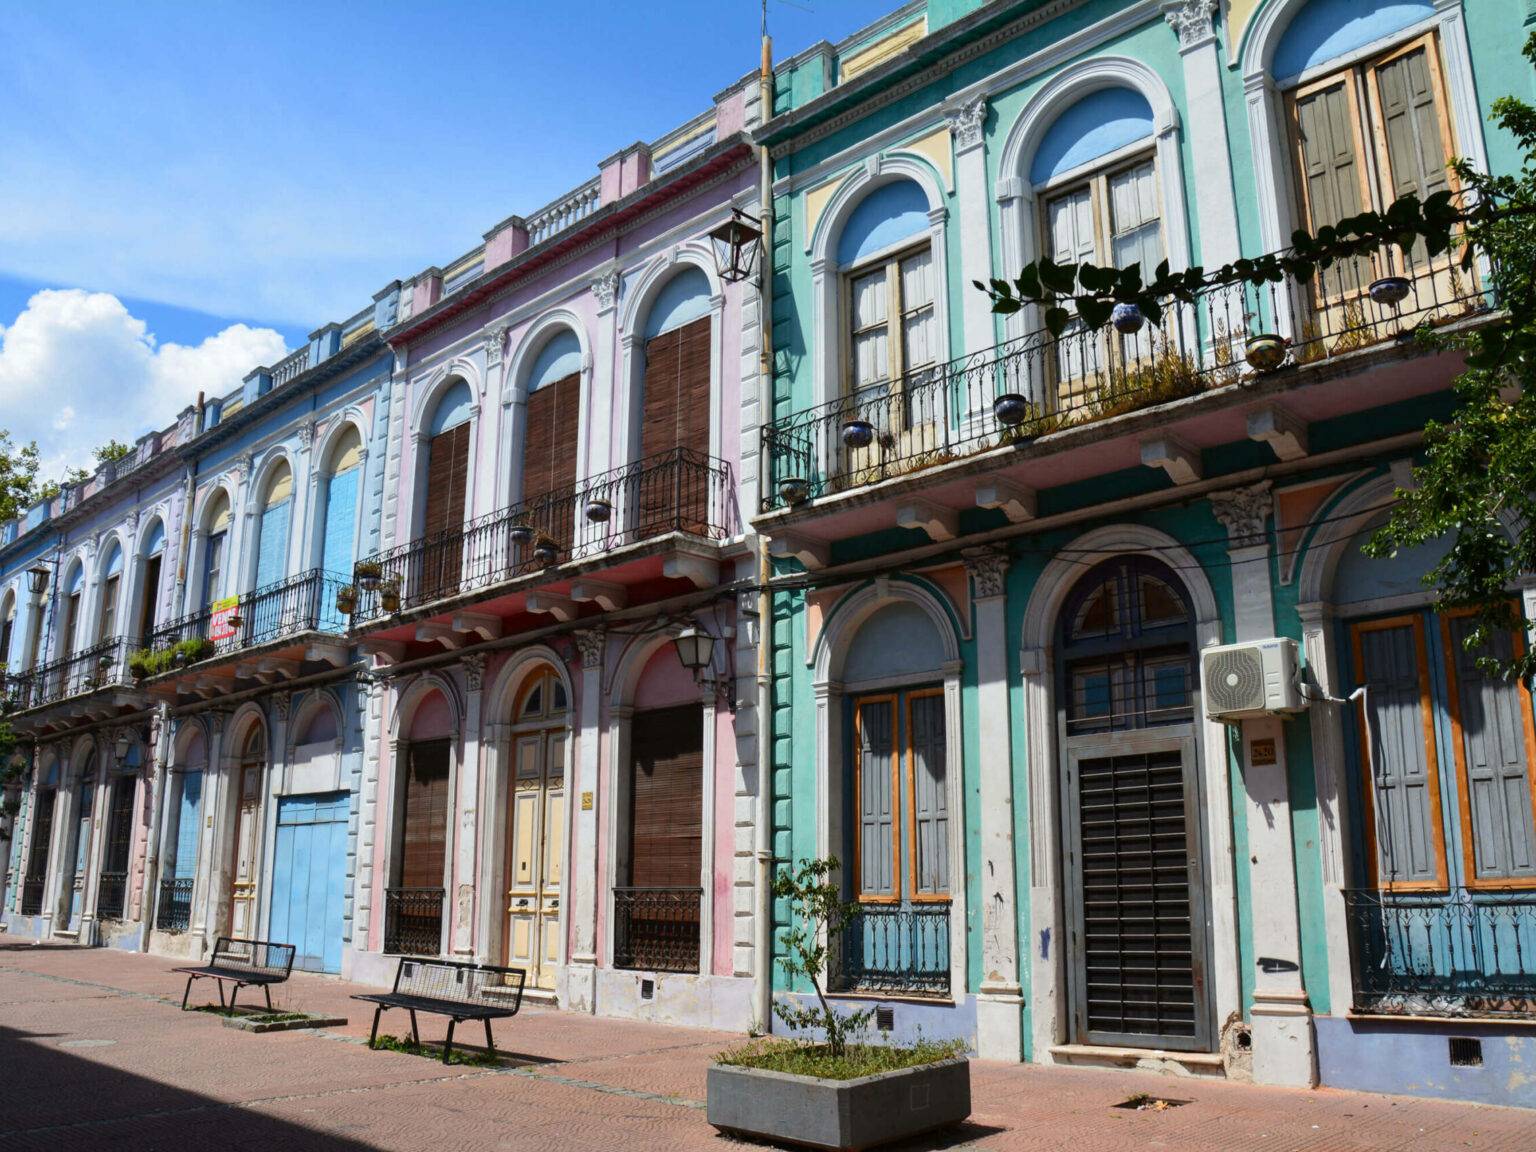 Bunte Häuser im Centro Historico in Montevideo an einer Straße.